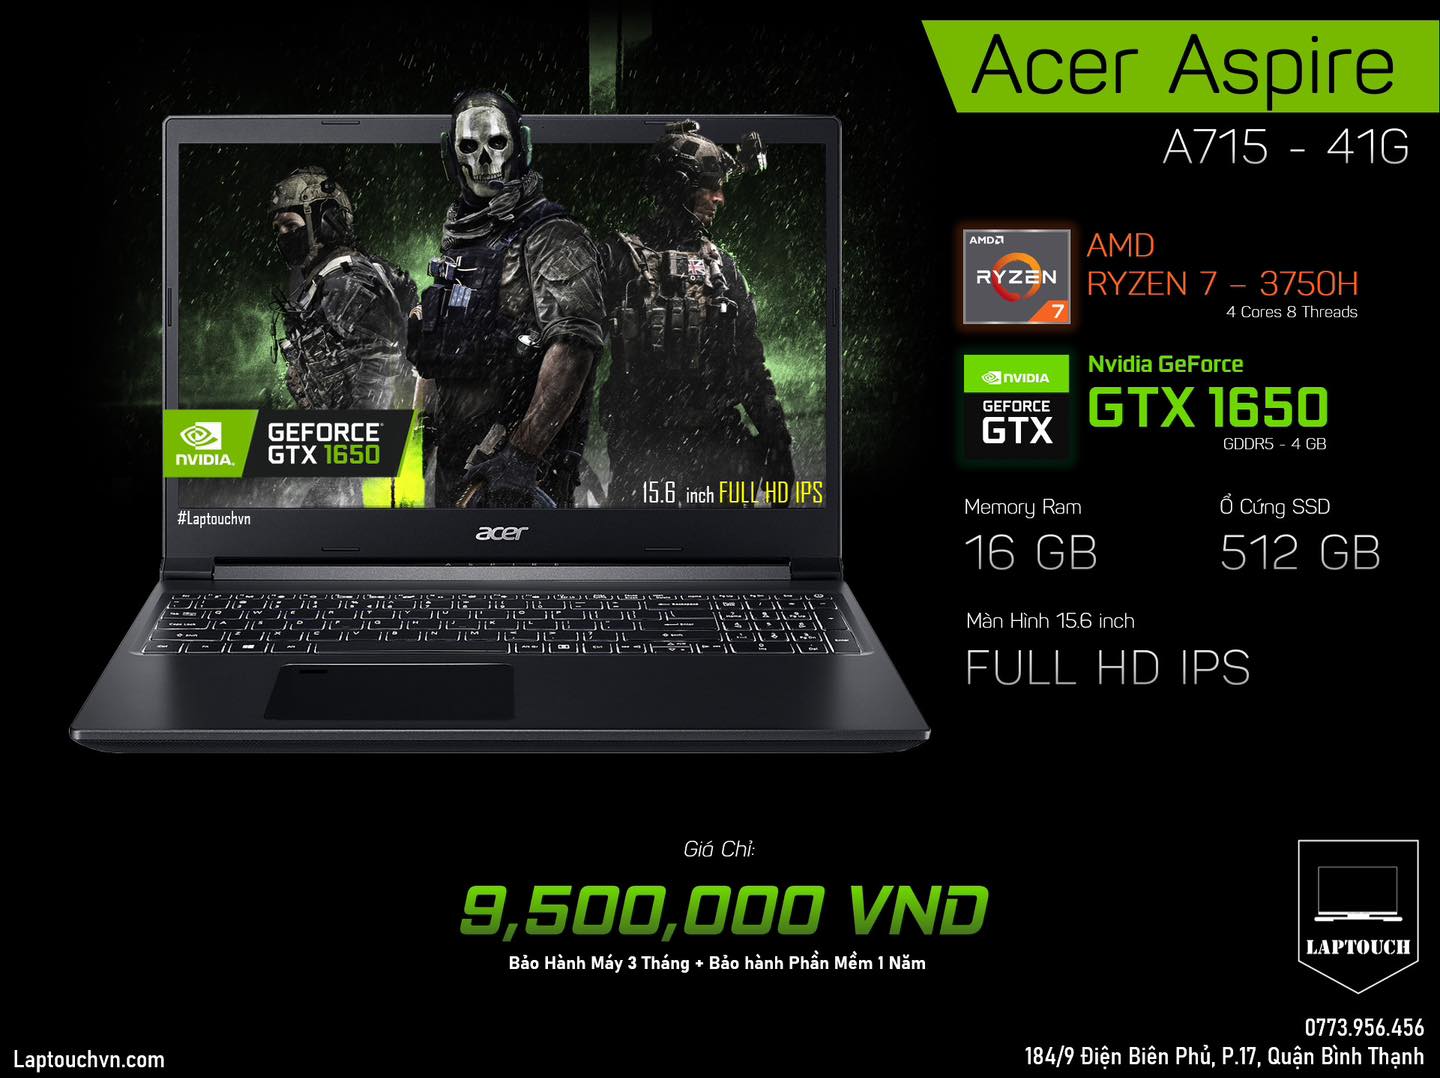 Acer Aspire A715 - 41G [ GTX 1650 ]